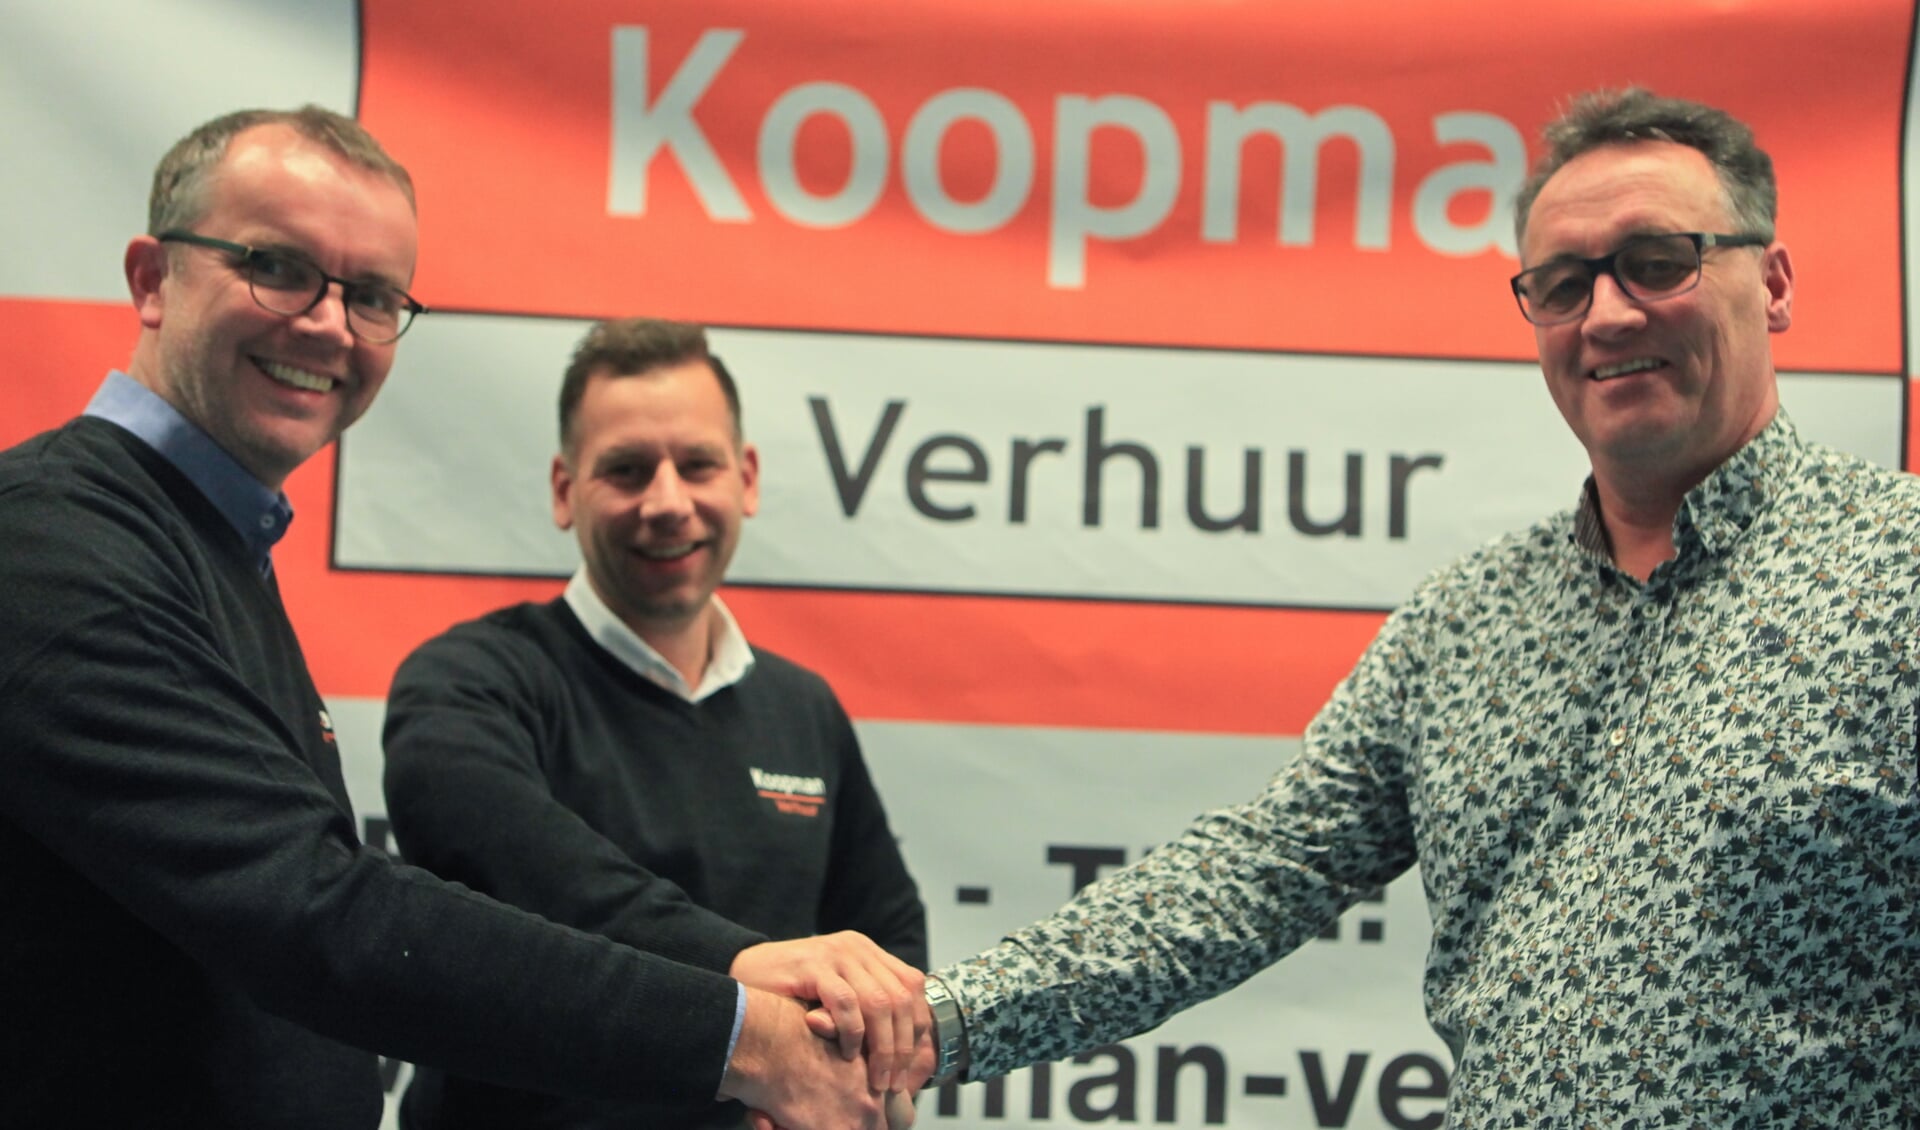 Harold Koopman en Michel Drieses bevestigen middels een handdruk de samenwerking met KV Wiko.  Foto: Stephan Laarhuis